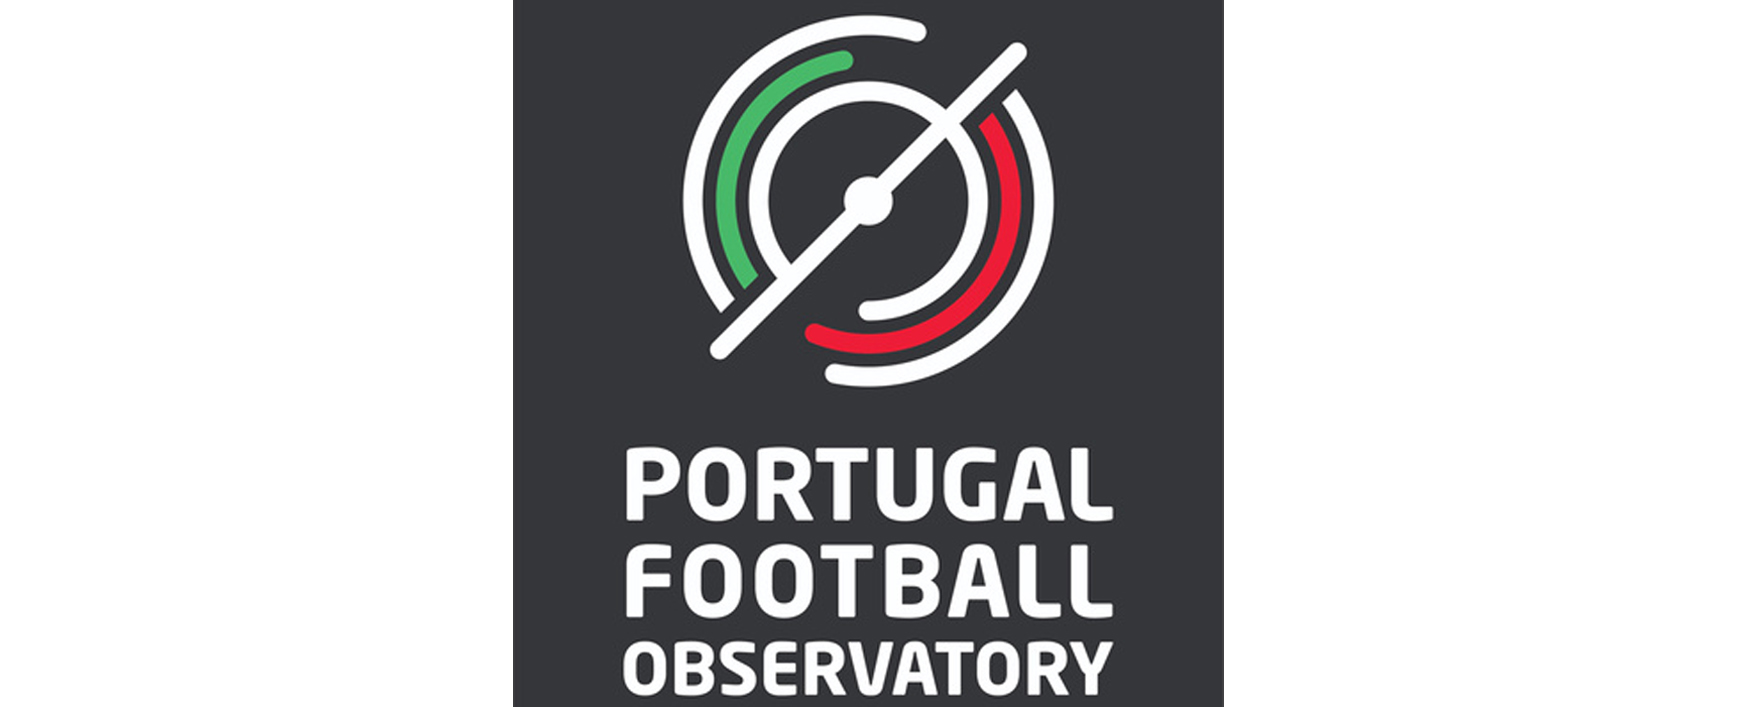 Portugal em 31.º no campeonato do tempo útil de jogo